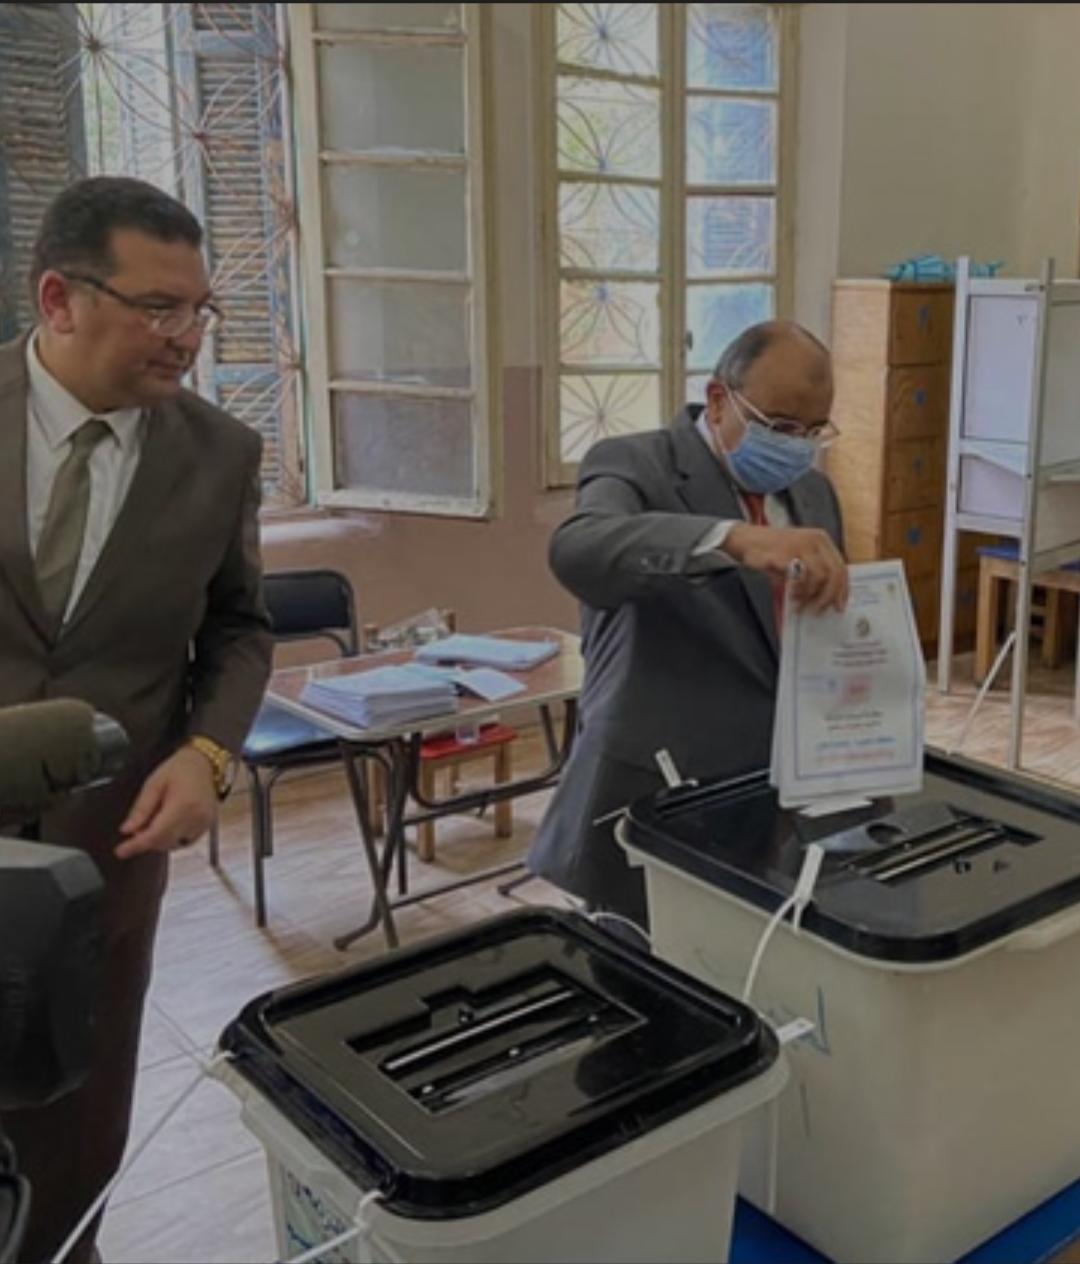   ‏وزير التنمية المحلية يدلي بصوته في انتخابات مجلس الشيوخ بمدرسة الحرية بمصر الجديدة